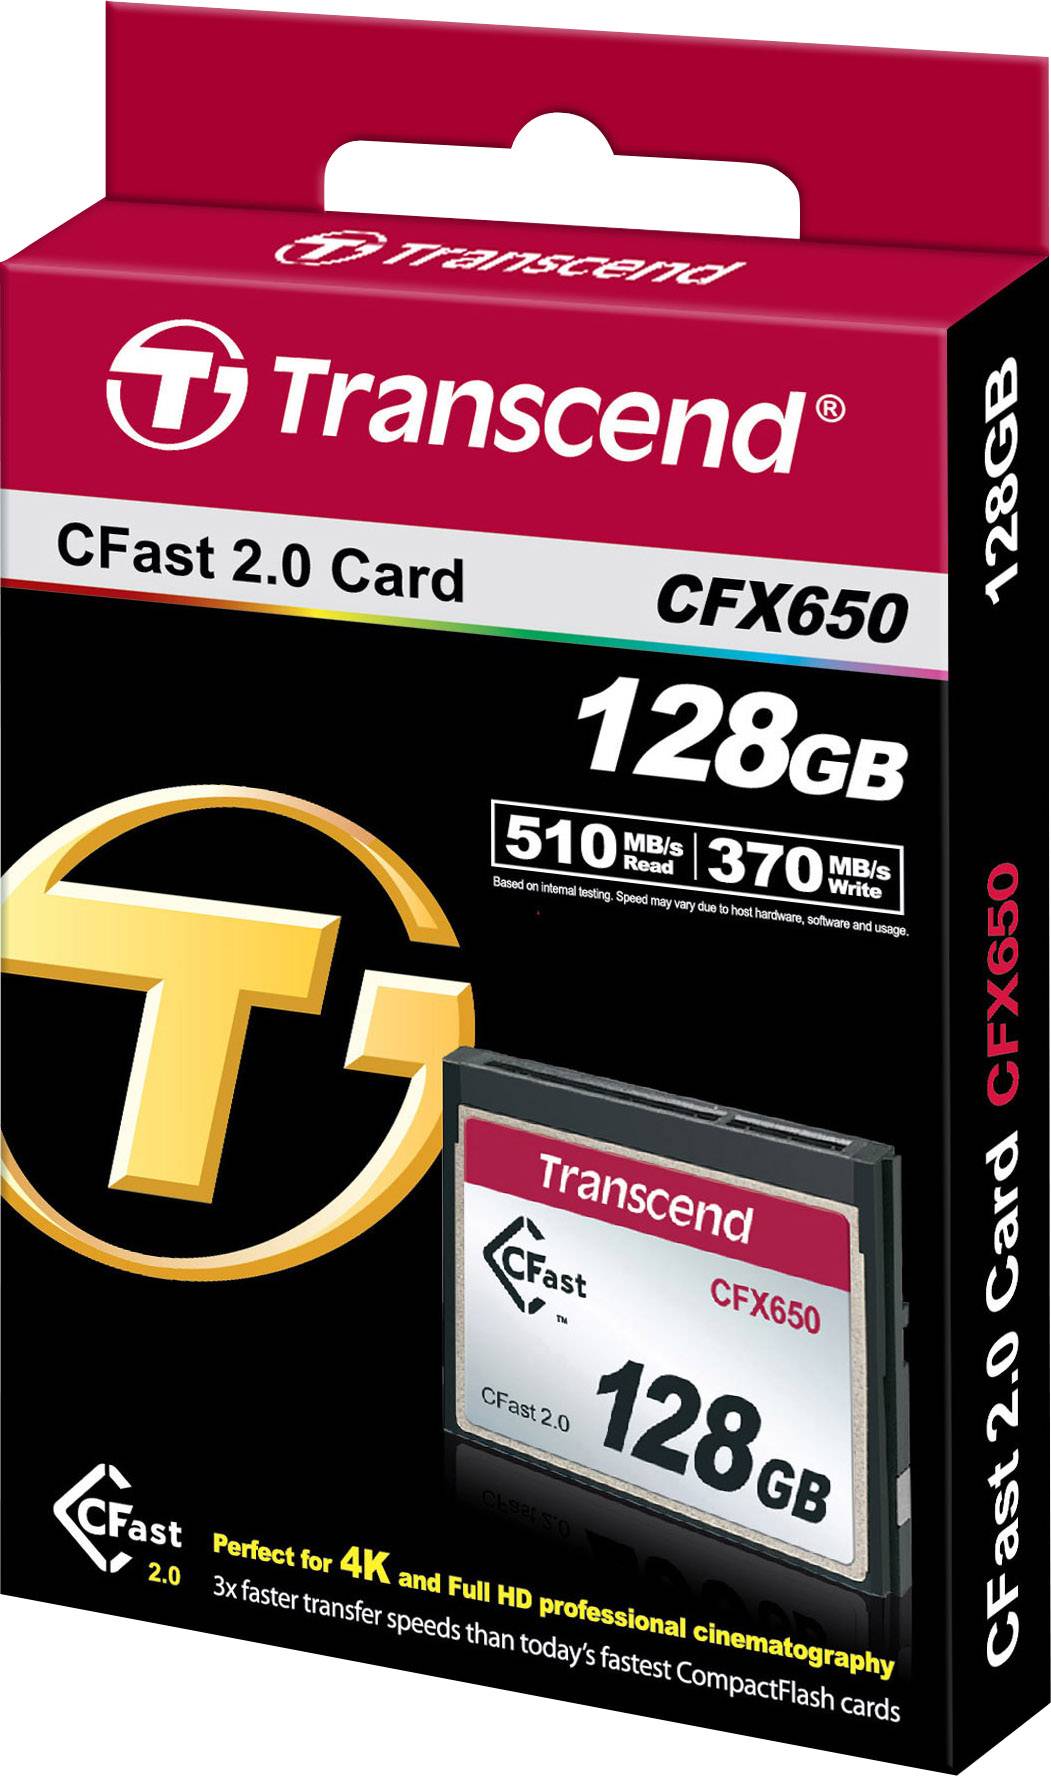 Carte Cfast Transcend CFX650 128 GB | Conrad.fr